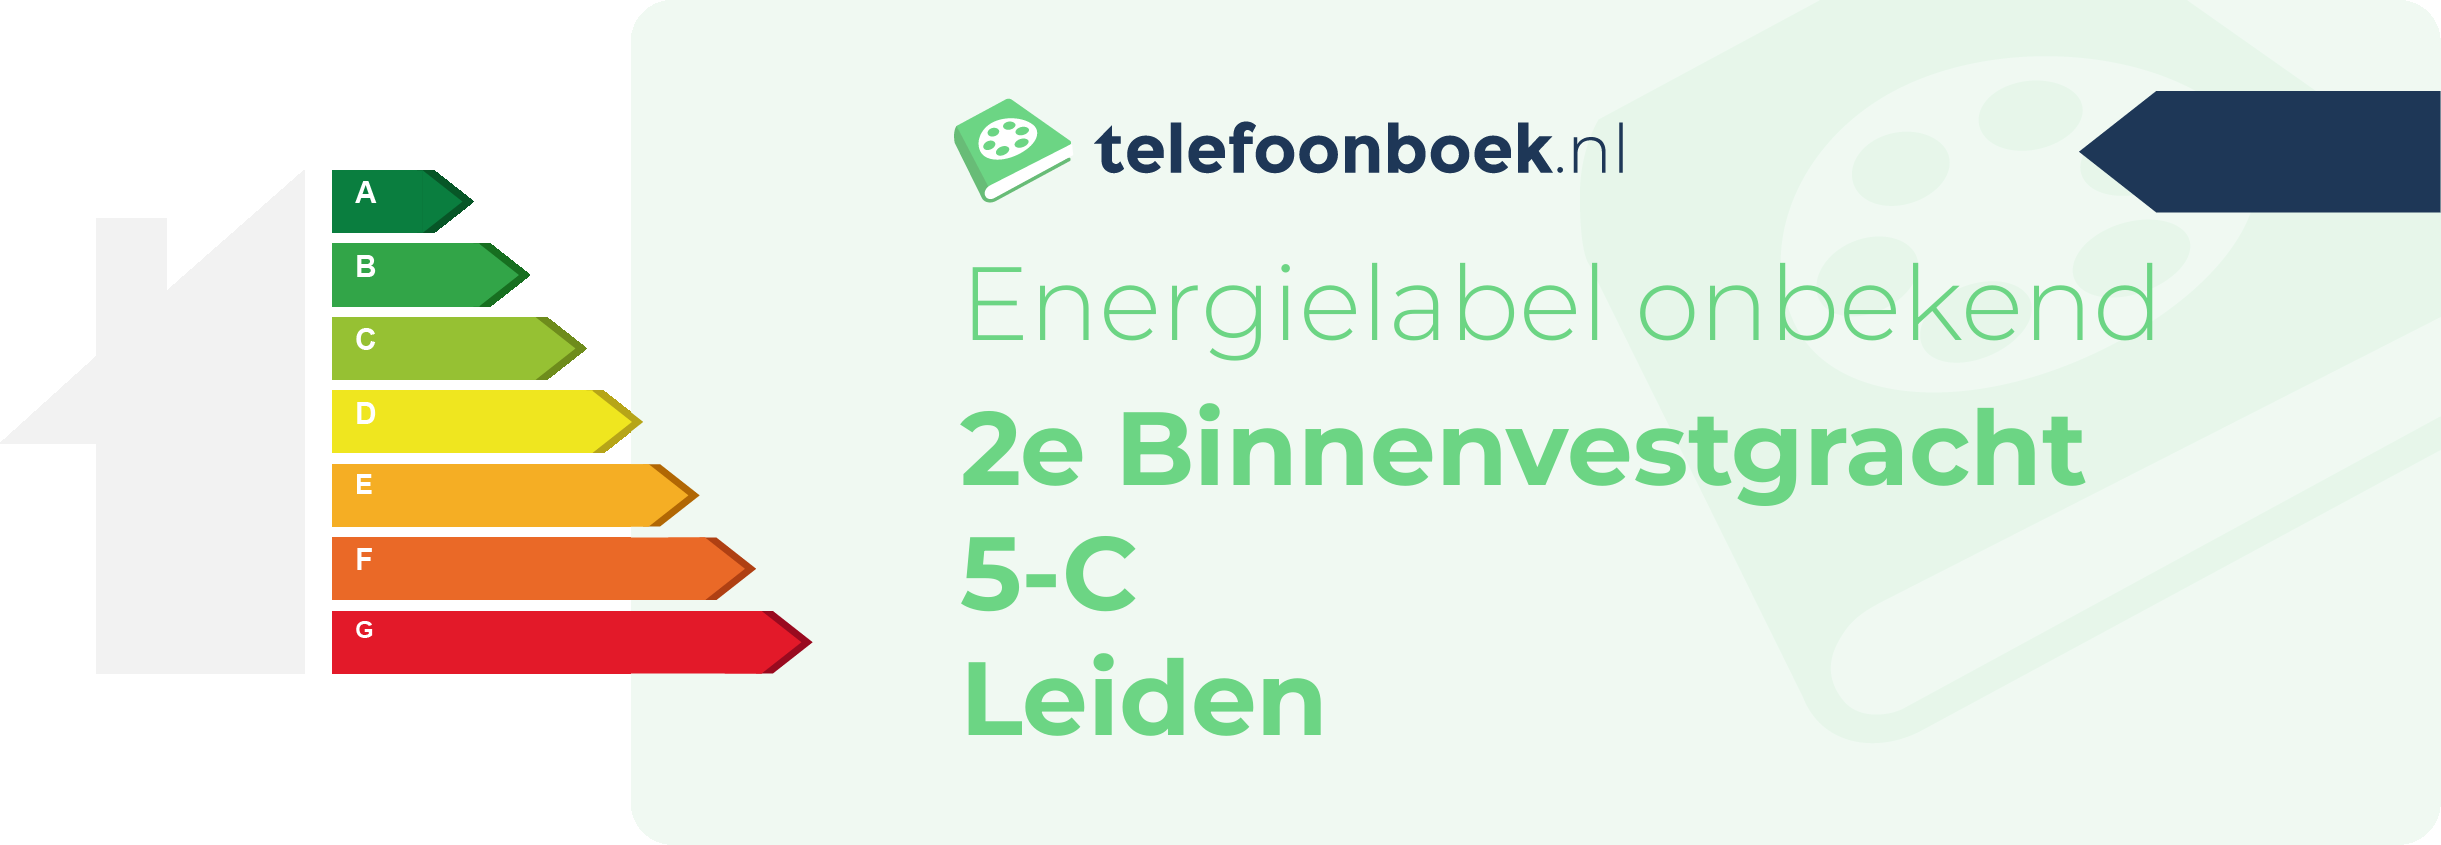 Energielabel 2e Binnenvestgracht 5-C Leiden